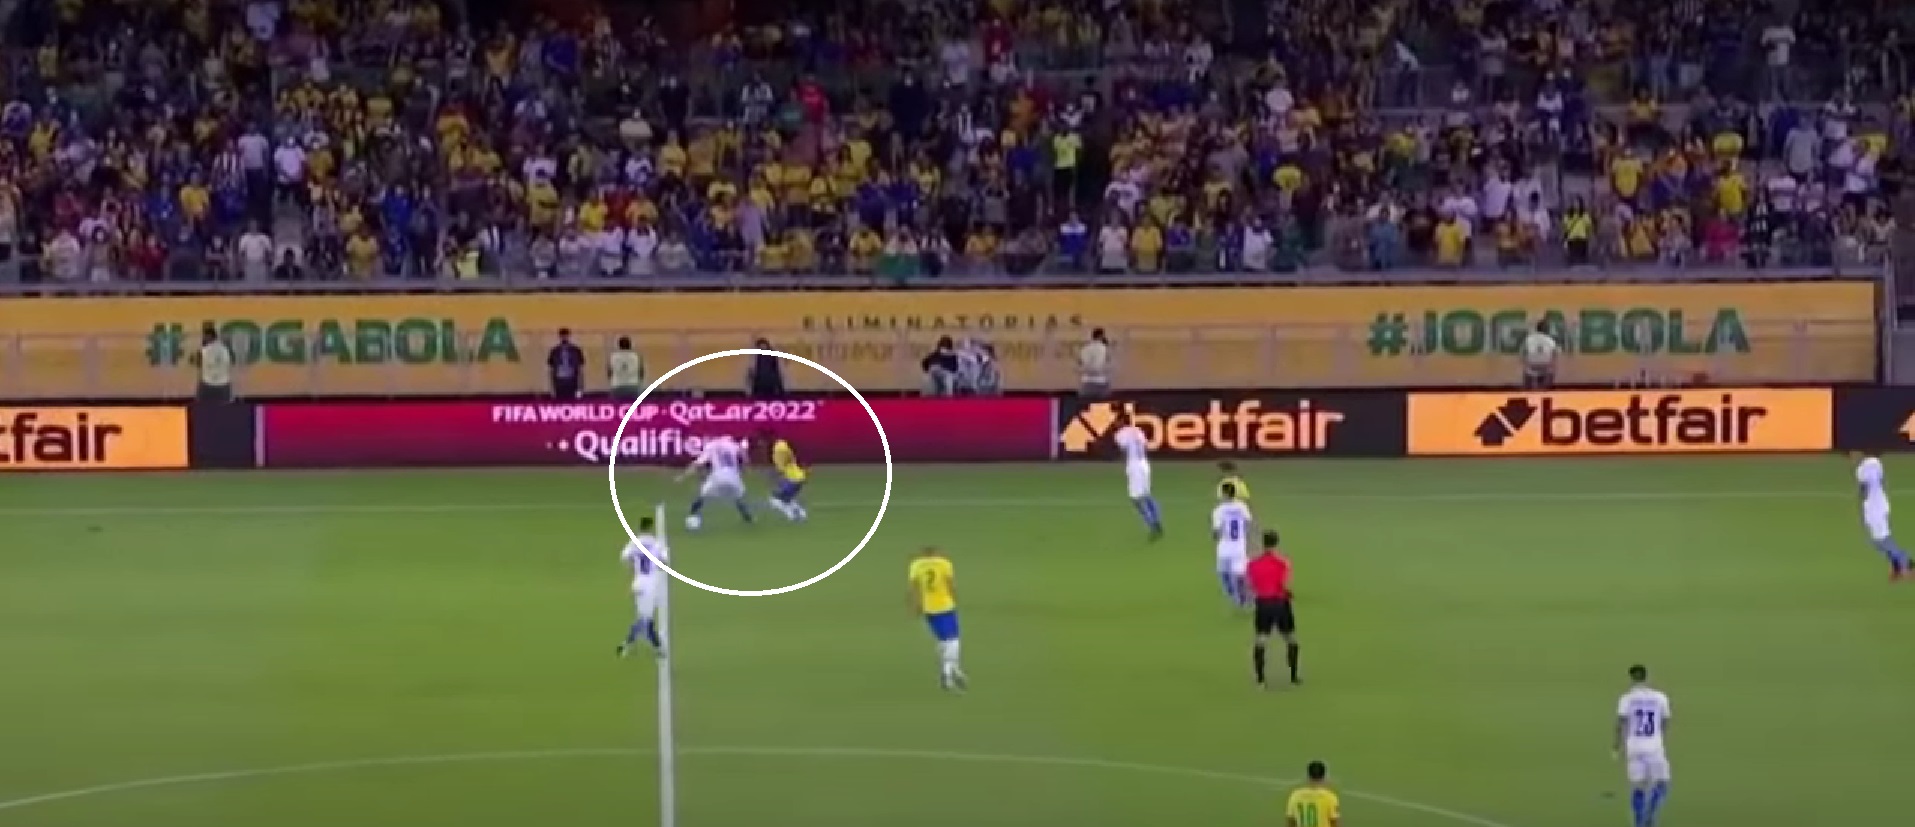 Винисиус издевается над игроками Парагвая: ровно 10 секунд волшебства